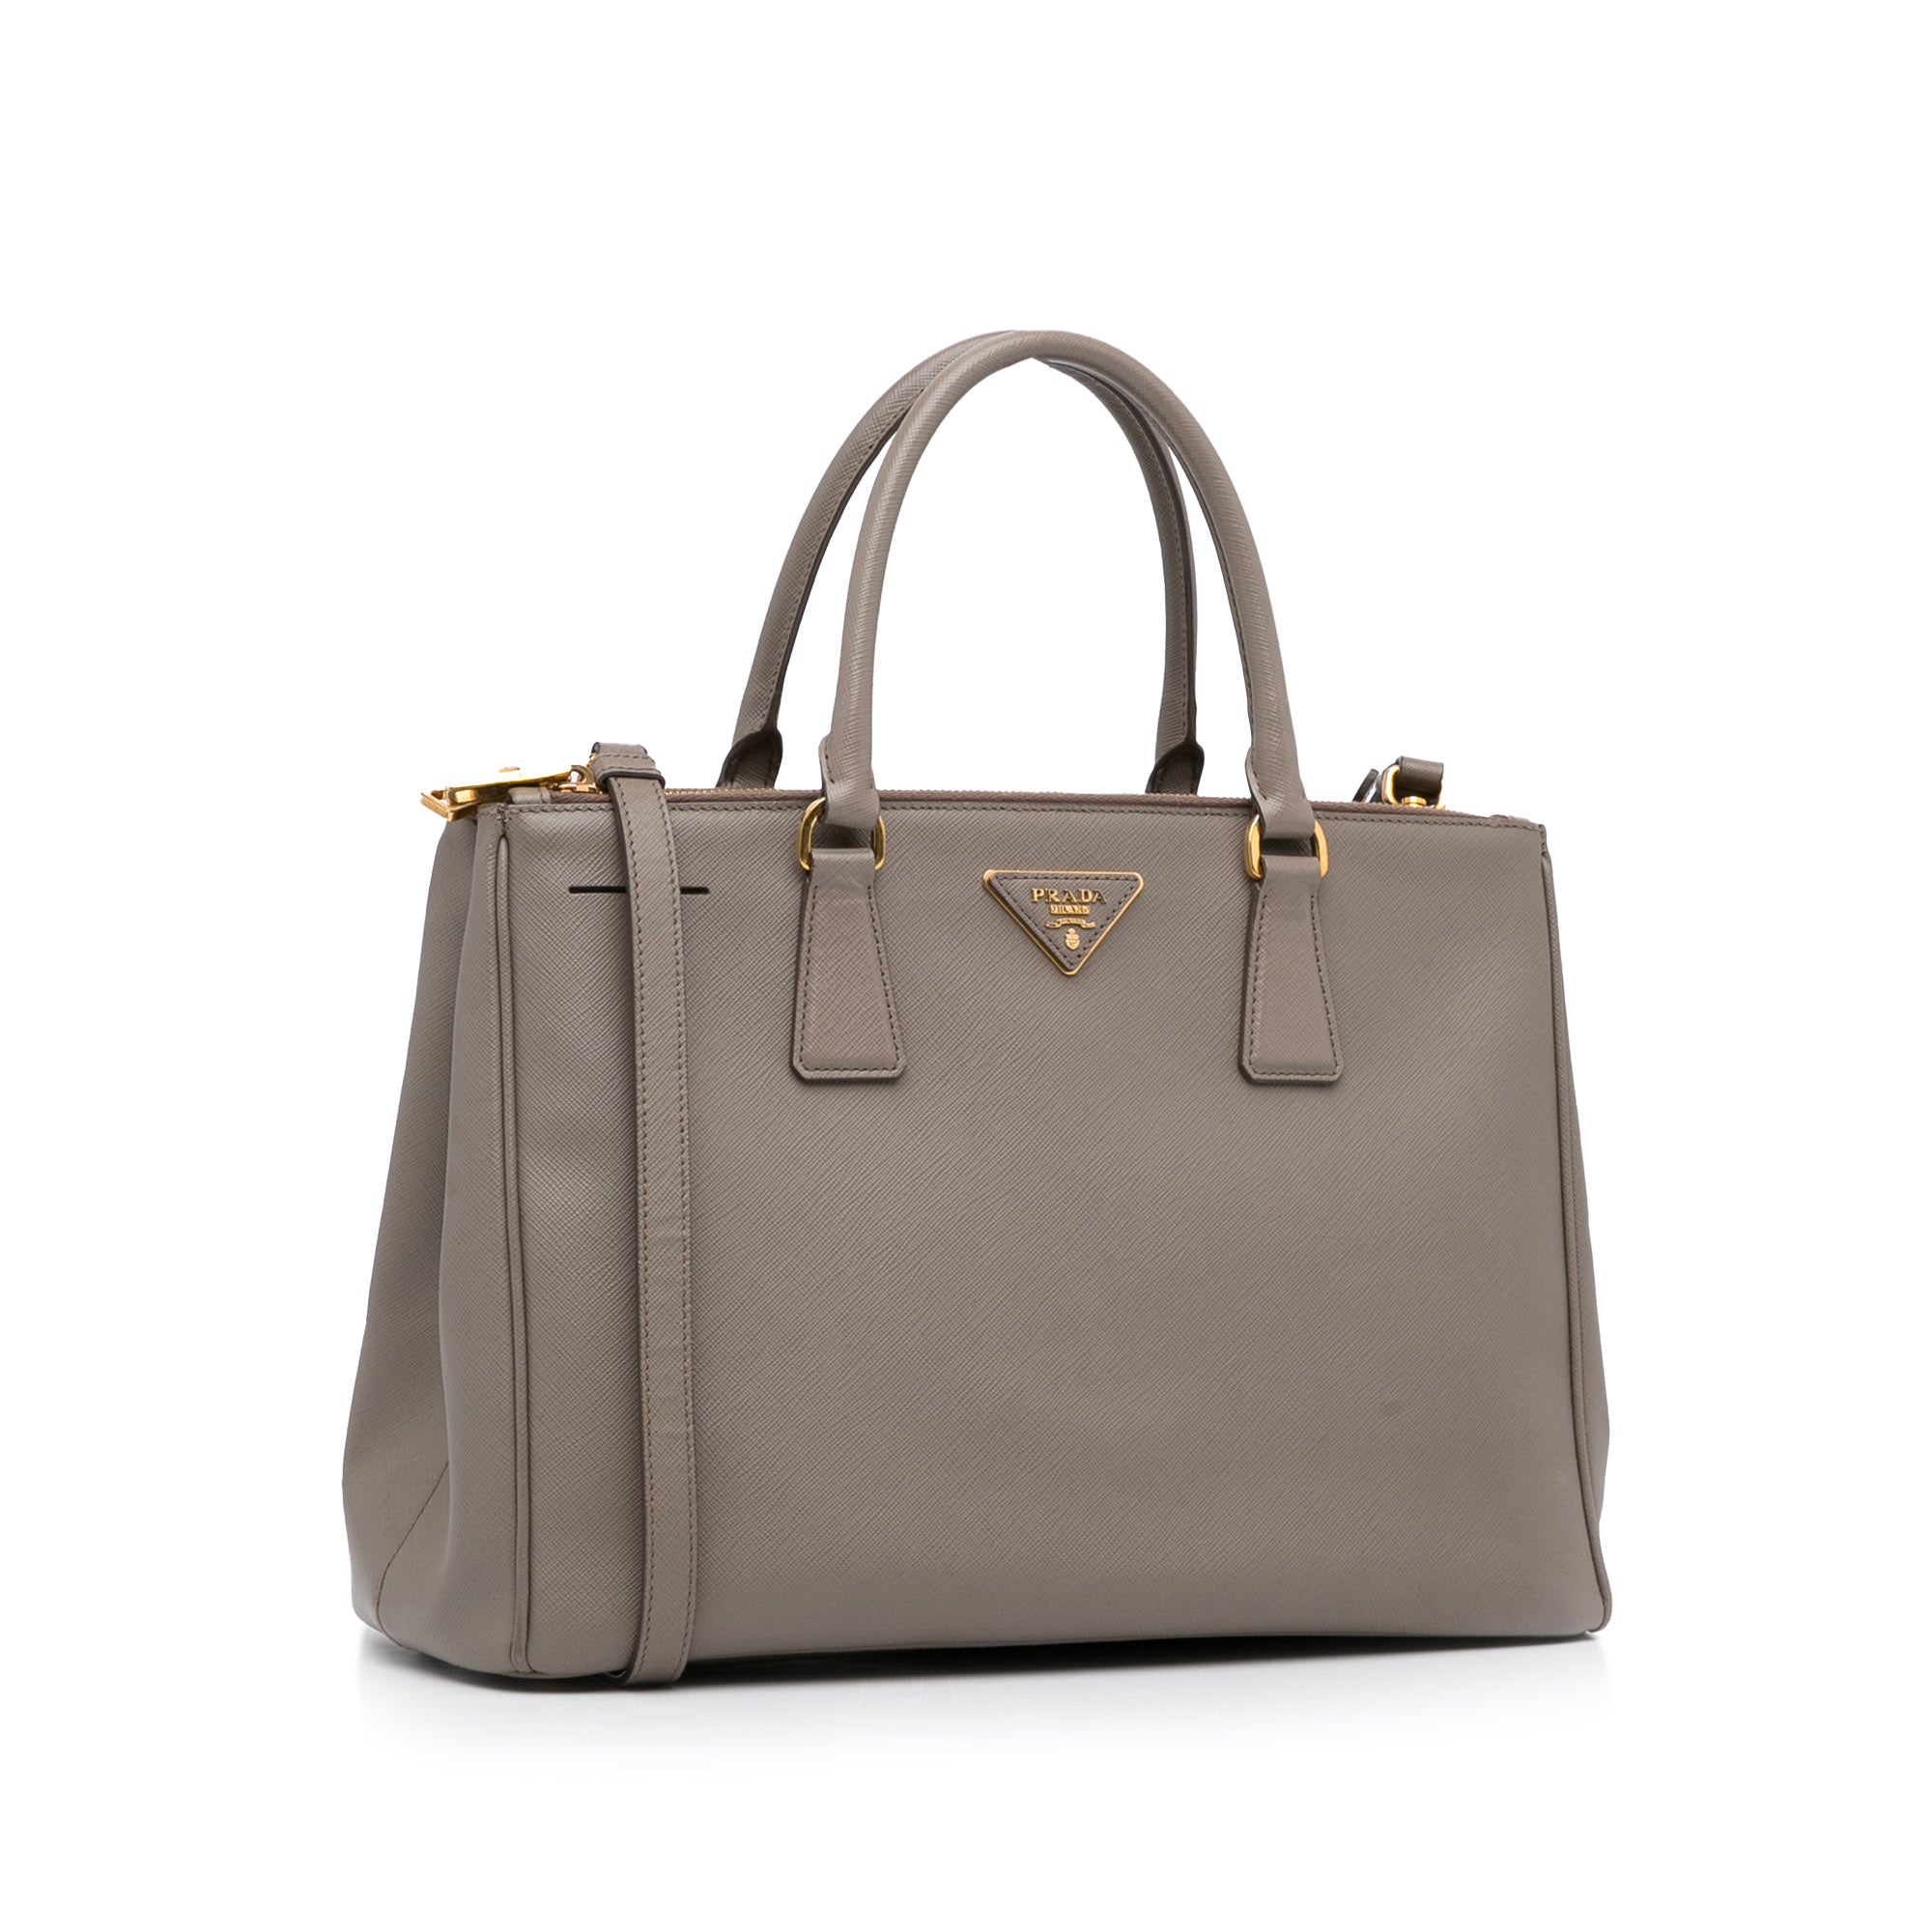 Prada, Bags, Authentic Prada Galleria Large Saffiano Leather Bag